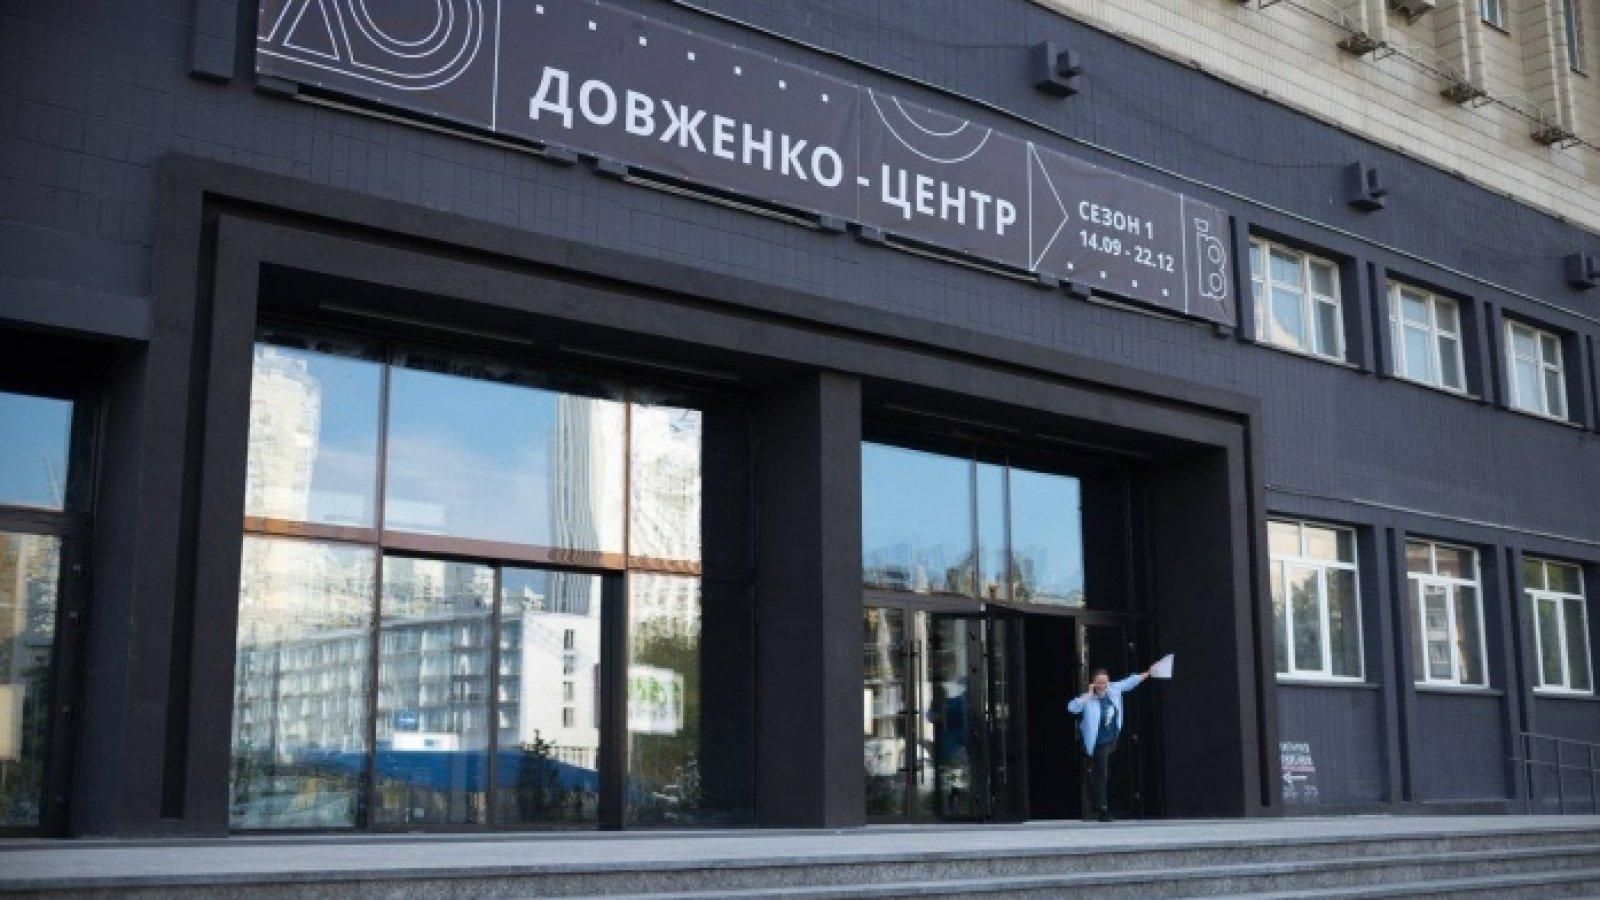 Довженко-Центр - у Мінкультури обурені та ініціюють переговори